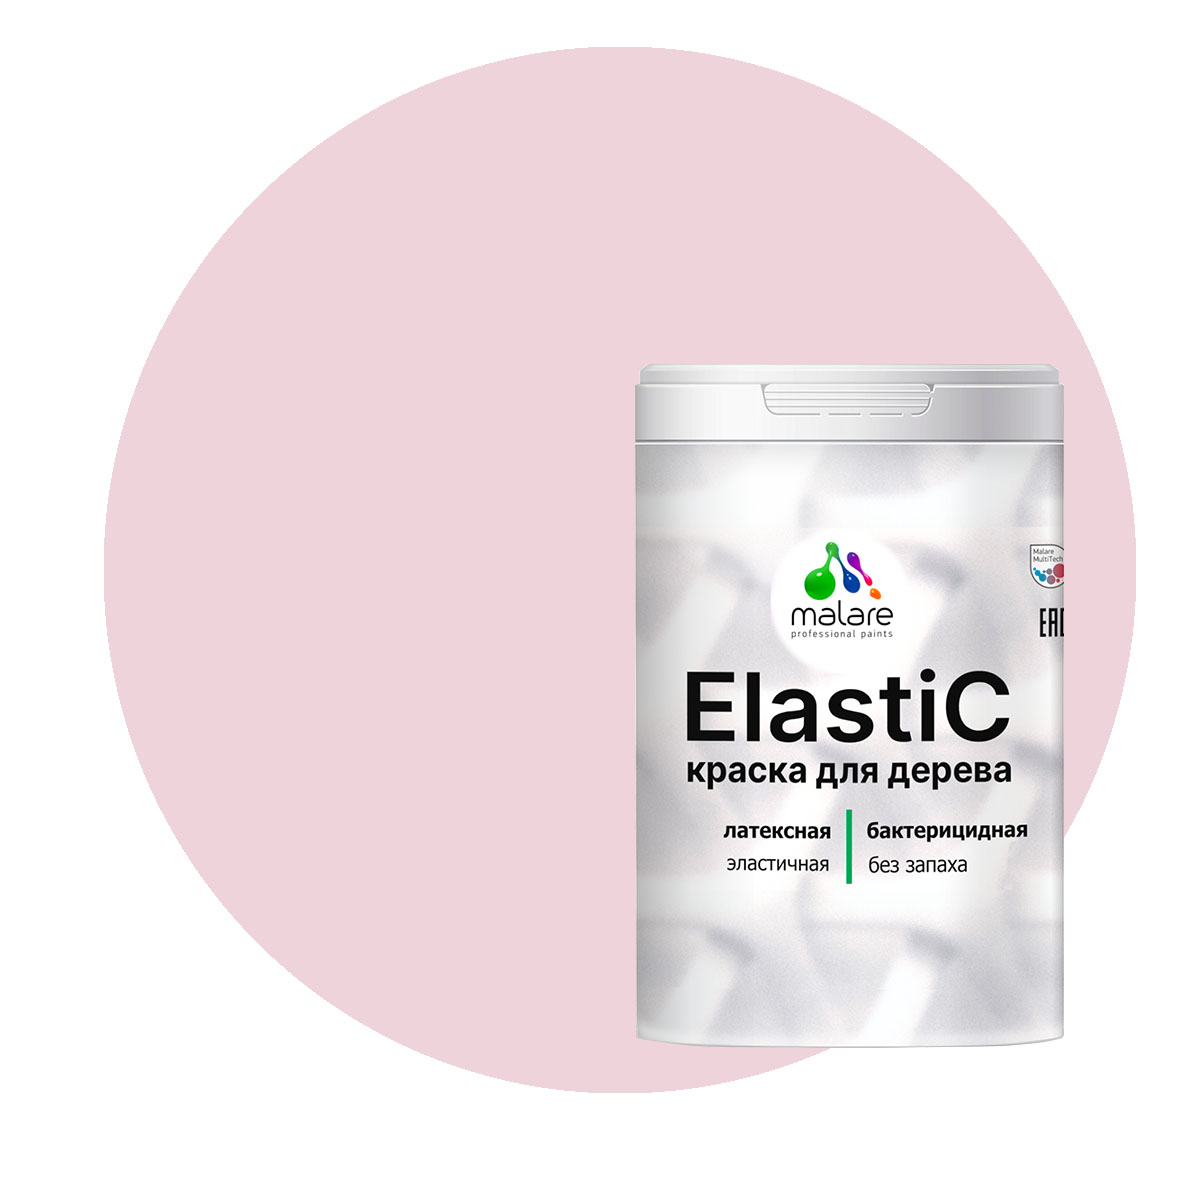 фото Краска malare elastic для деревянных поверхностей, бледно-розовый, 1 кг.